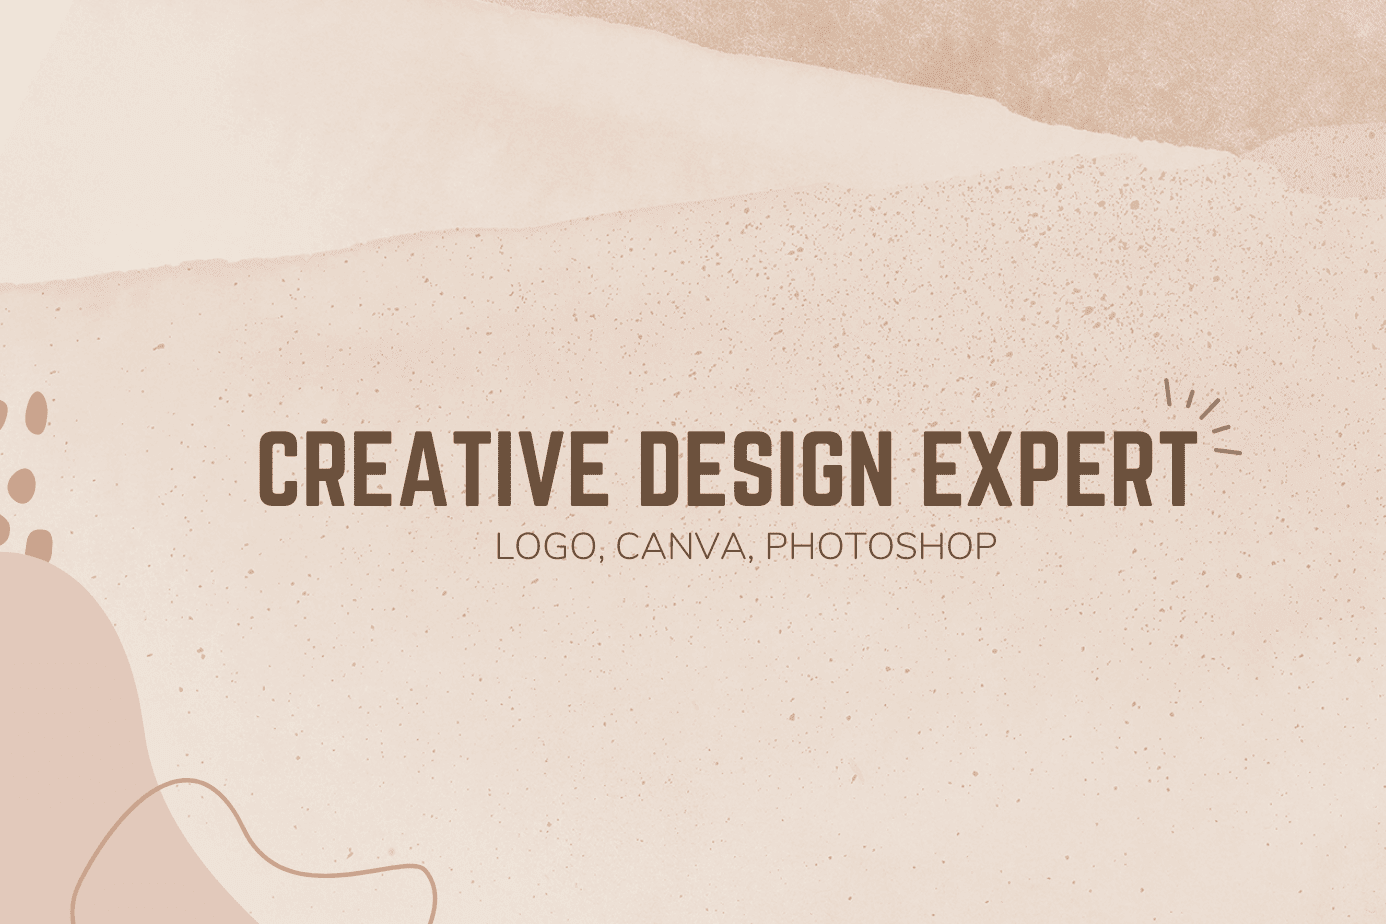 Portfolio for CREATIVE DESIGN EXPERT (LOGO, CANVA)